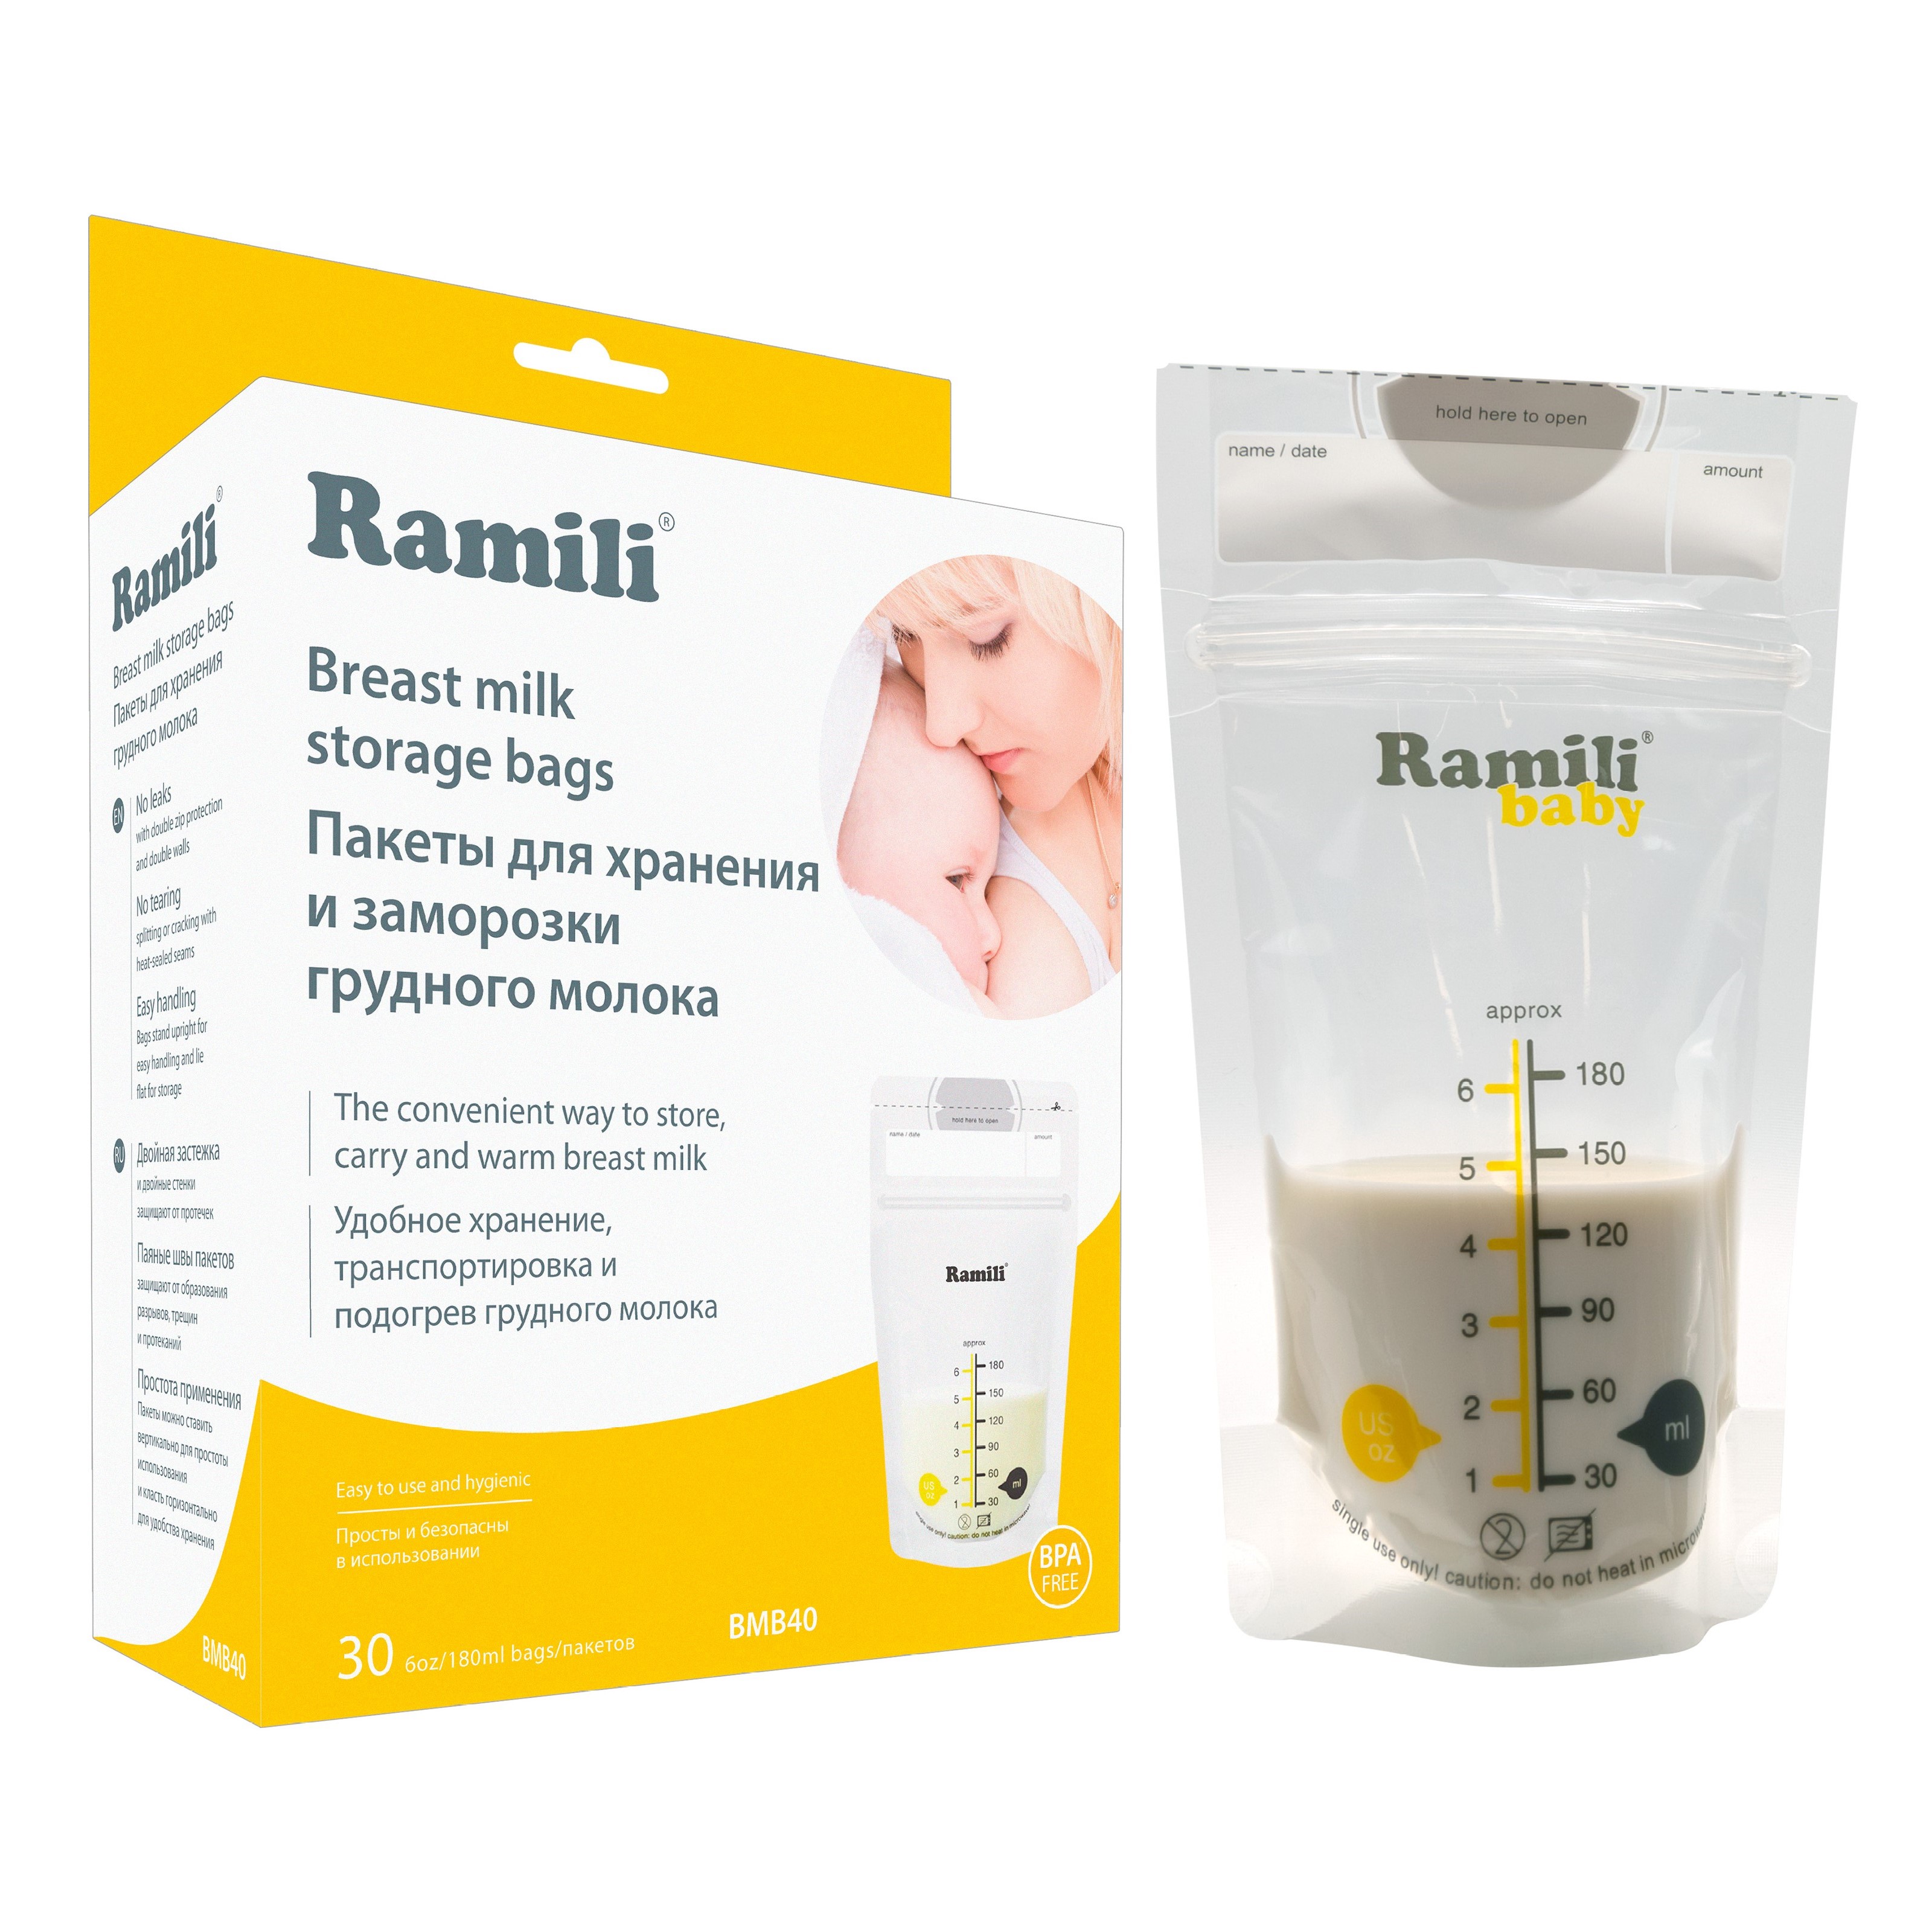 Пакеты для хранения и заморозки грудного молока Ramili Baby BMB40 пакеты для заморозки и хранения грудного молока pigeon 120 мл 25 шт holiday